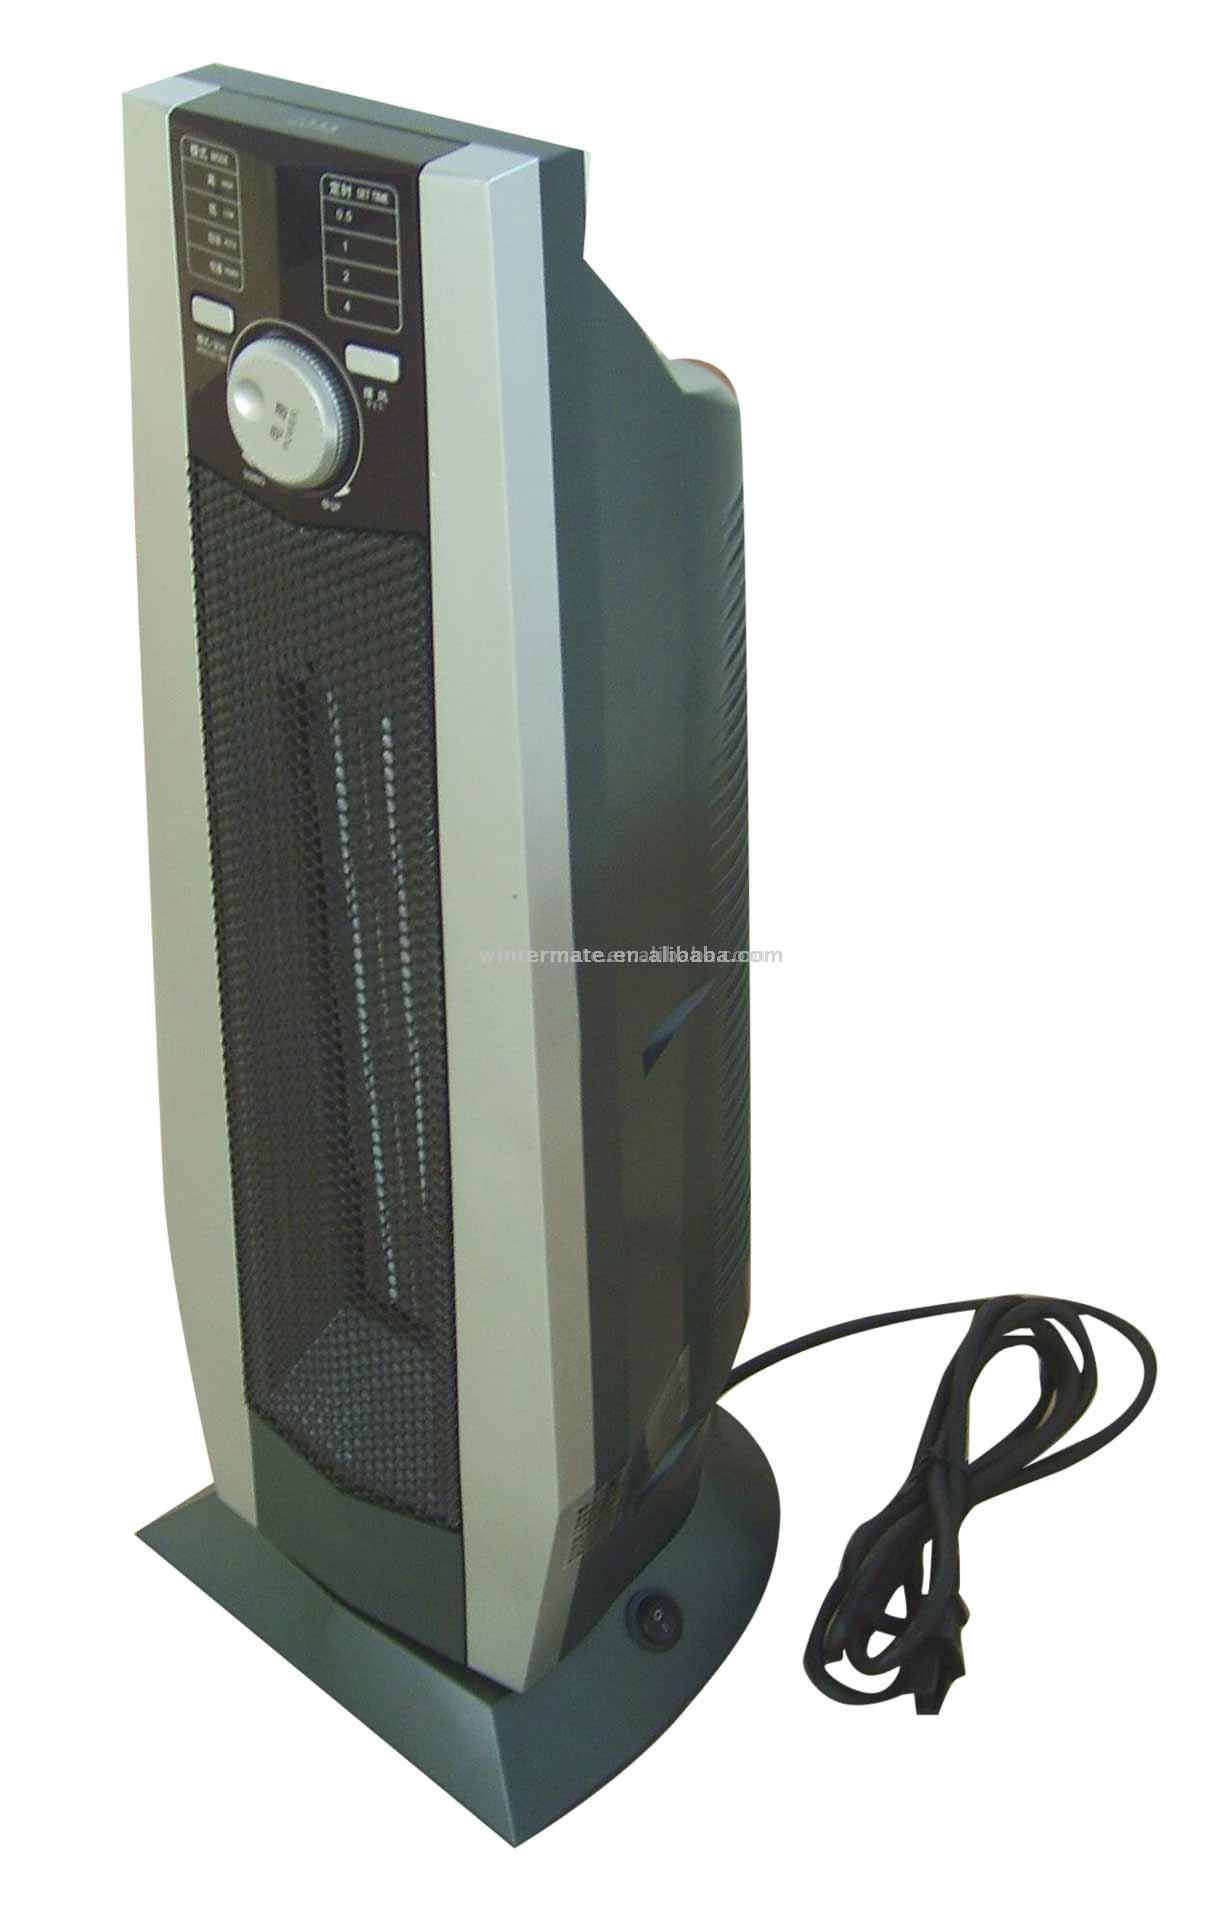  PTC Ceramic Heater (Керамический нагреватель PTC)